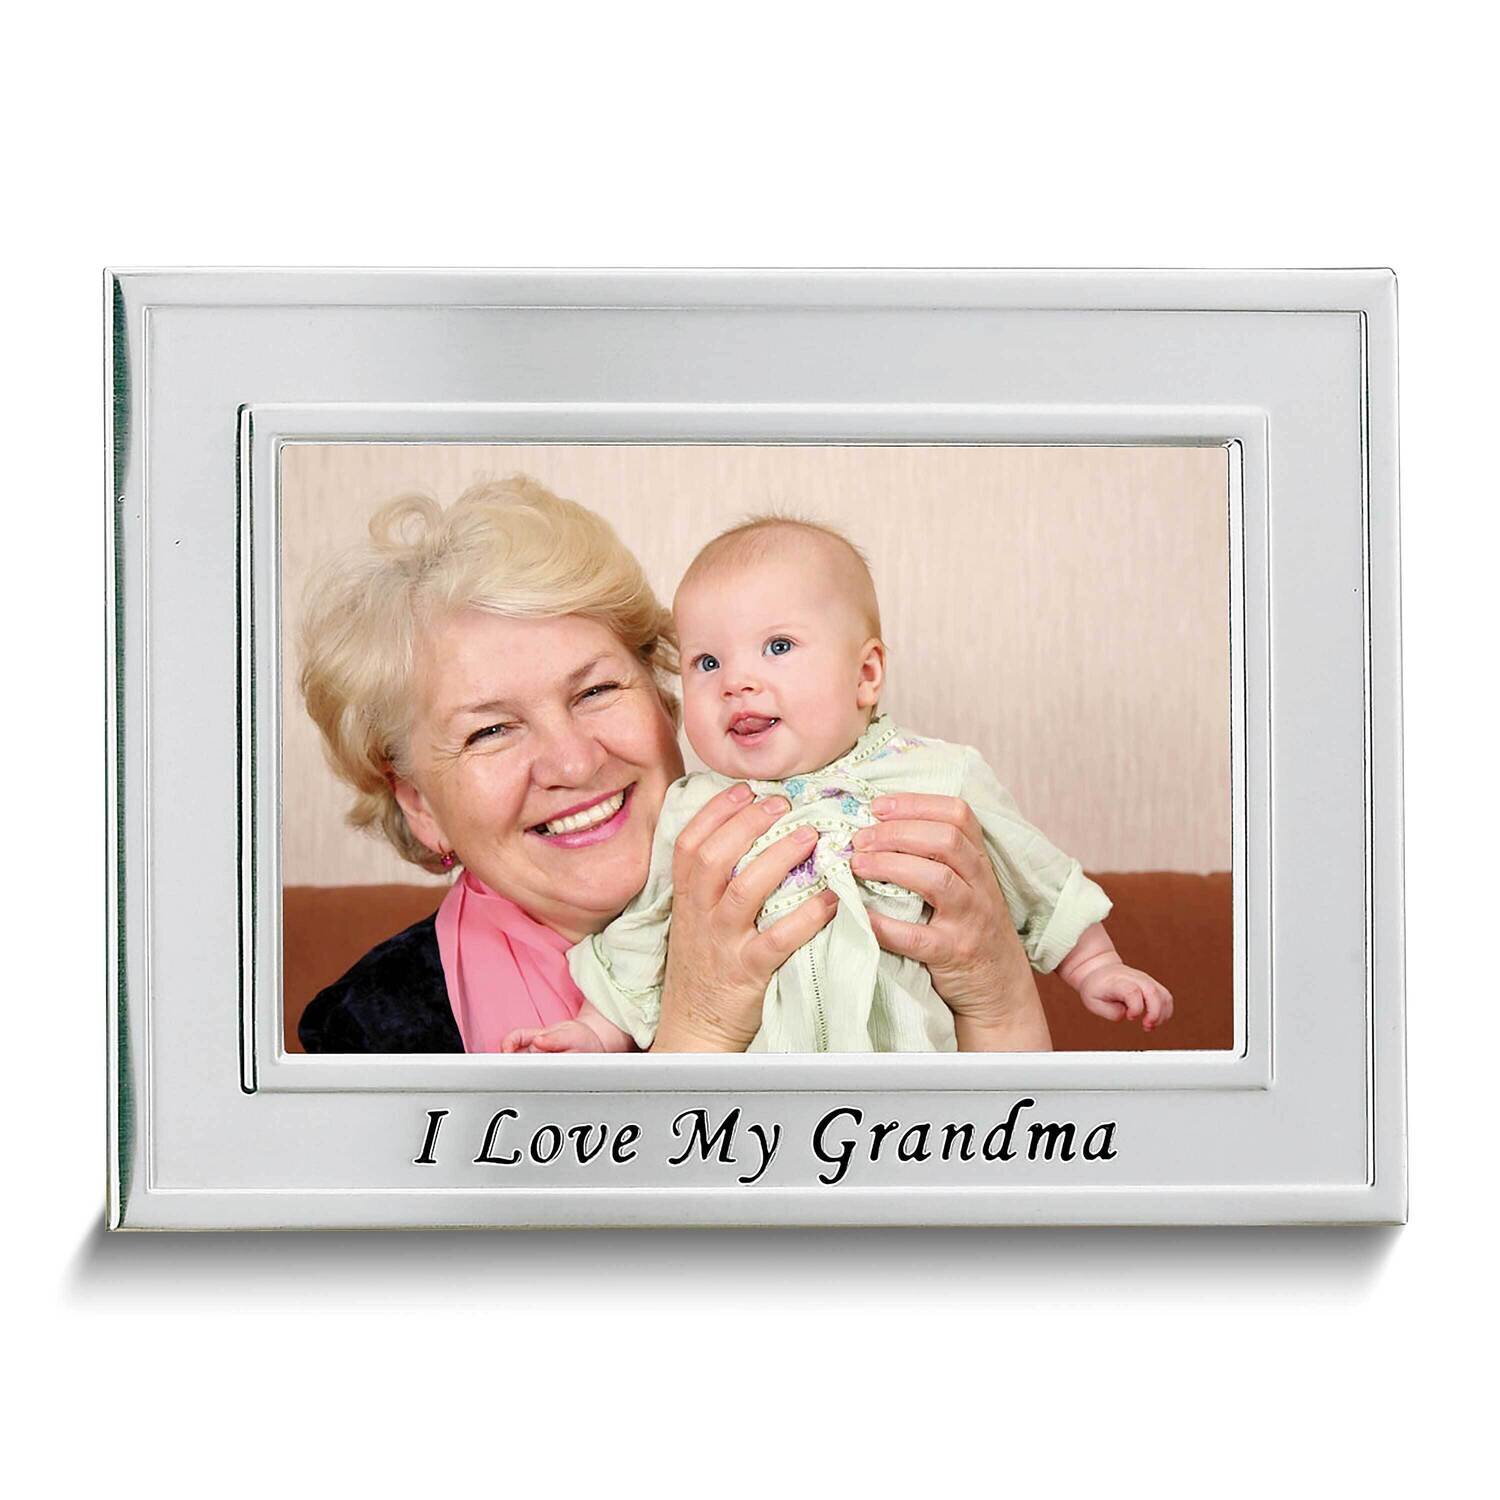 I Love My Grandma 6x4 Photo Frame GM4549